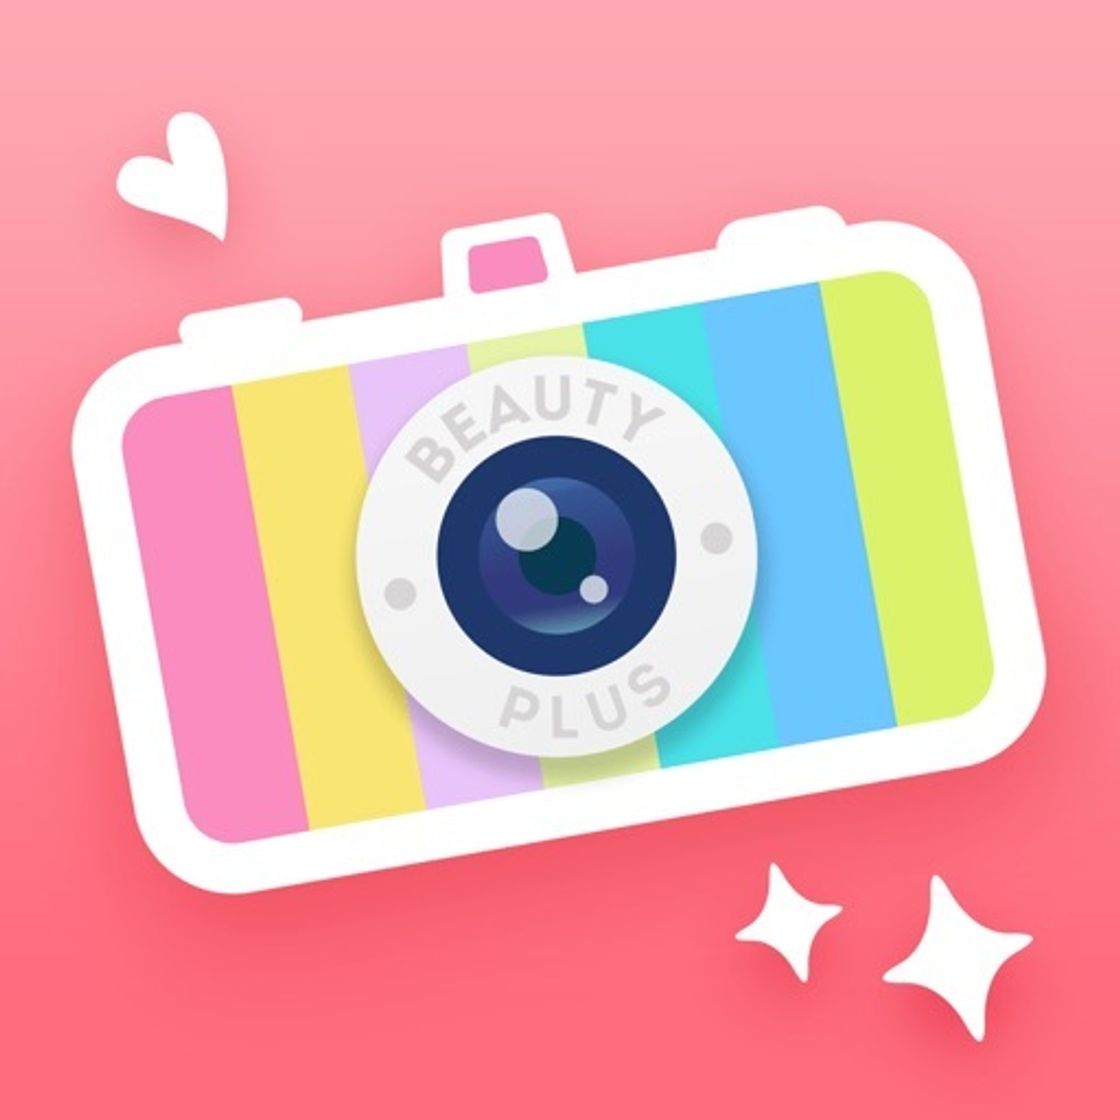 BeautyPlus -Snap, Edit, Filter